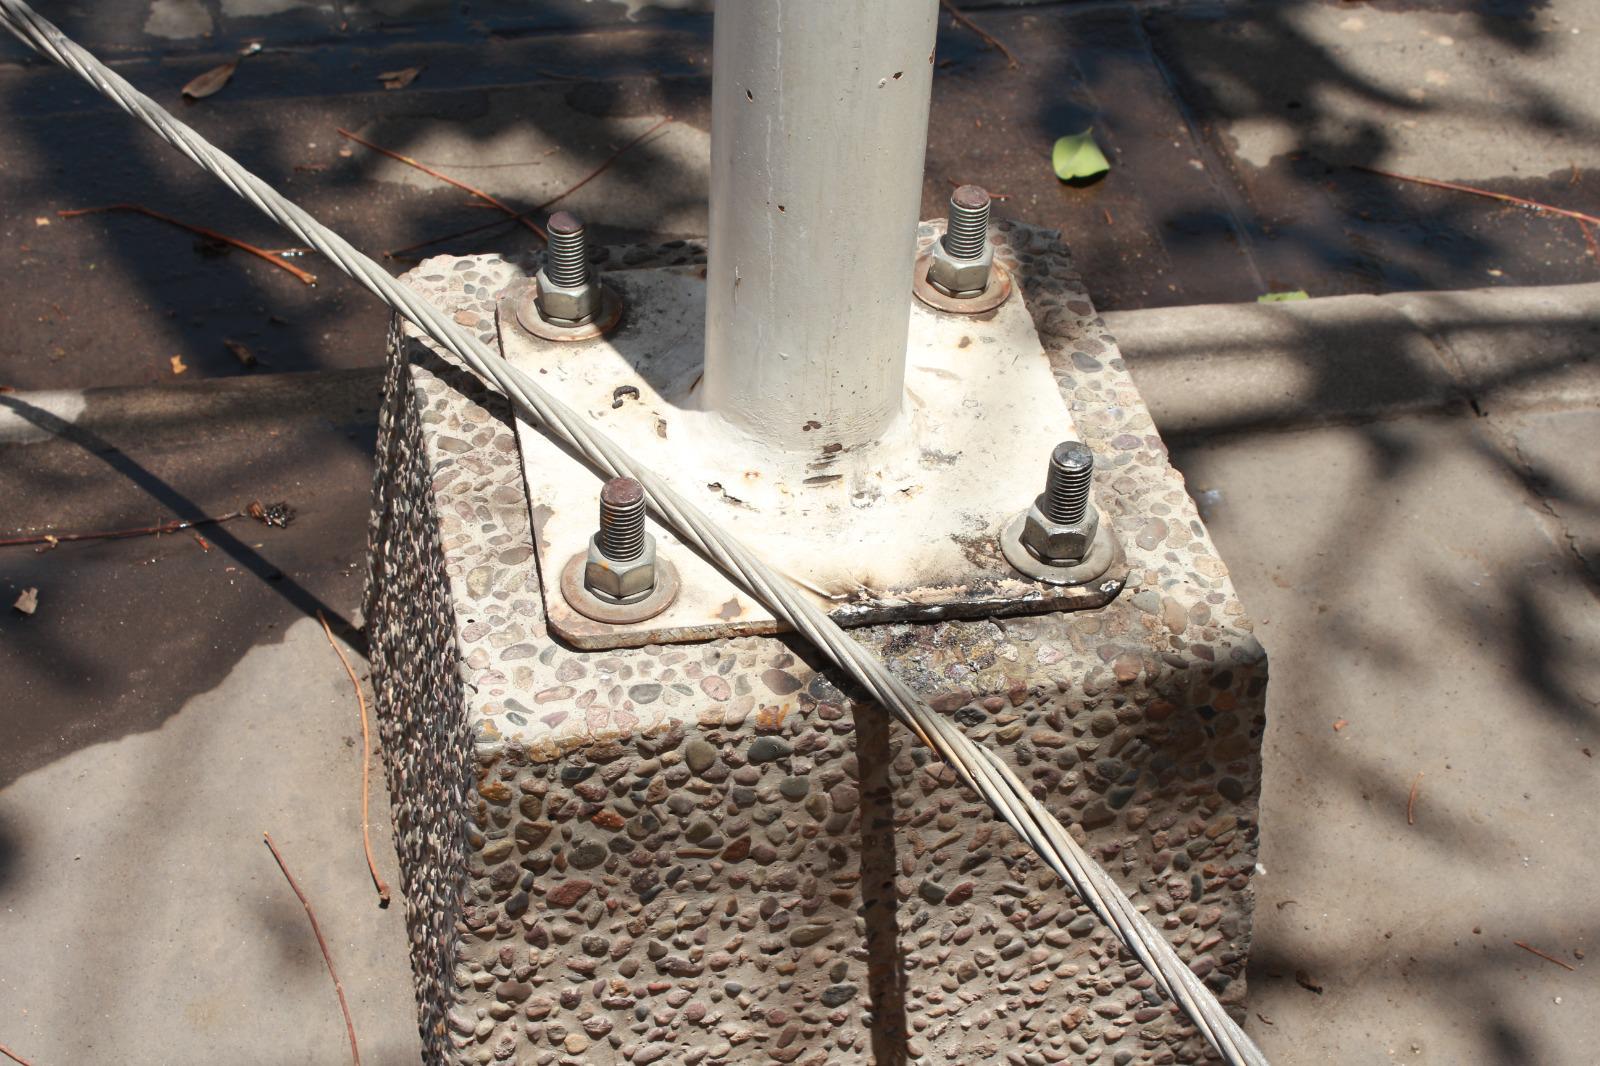 $!Cae cable de alta tensión en su casa y daña tuberías, aparatos y electricidad, exigen a CFE pague daños